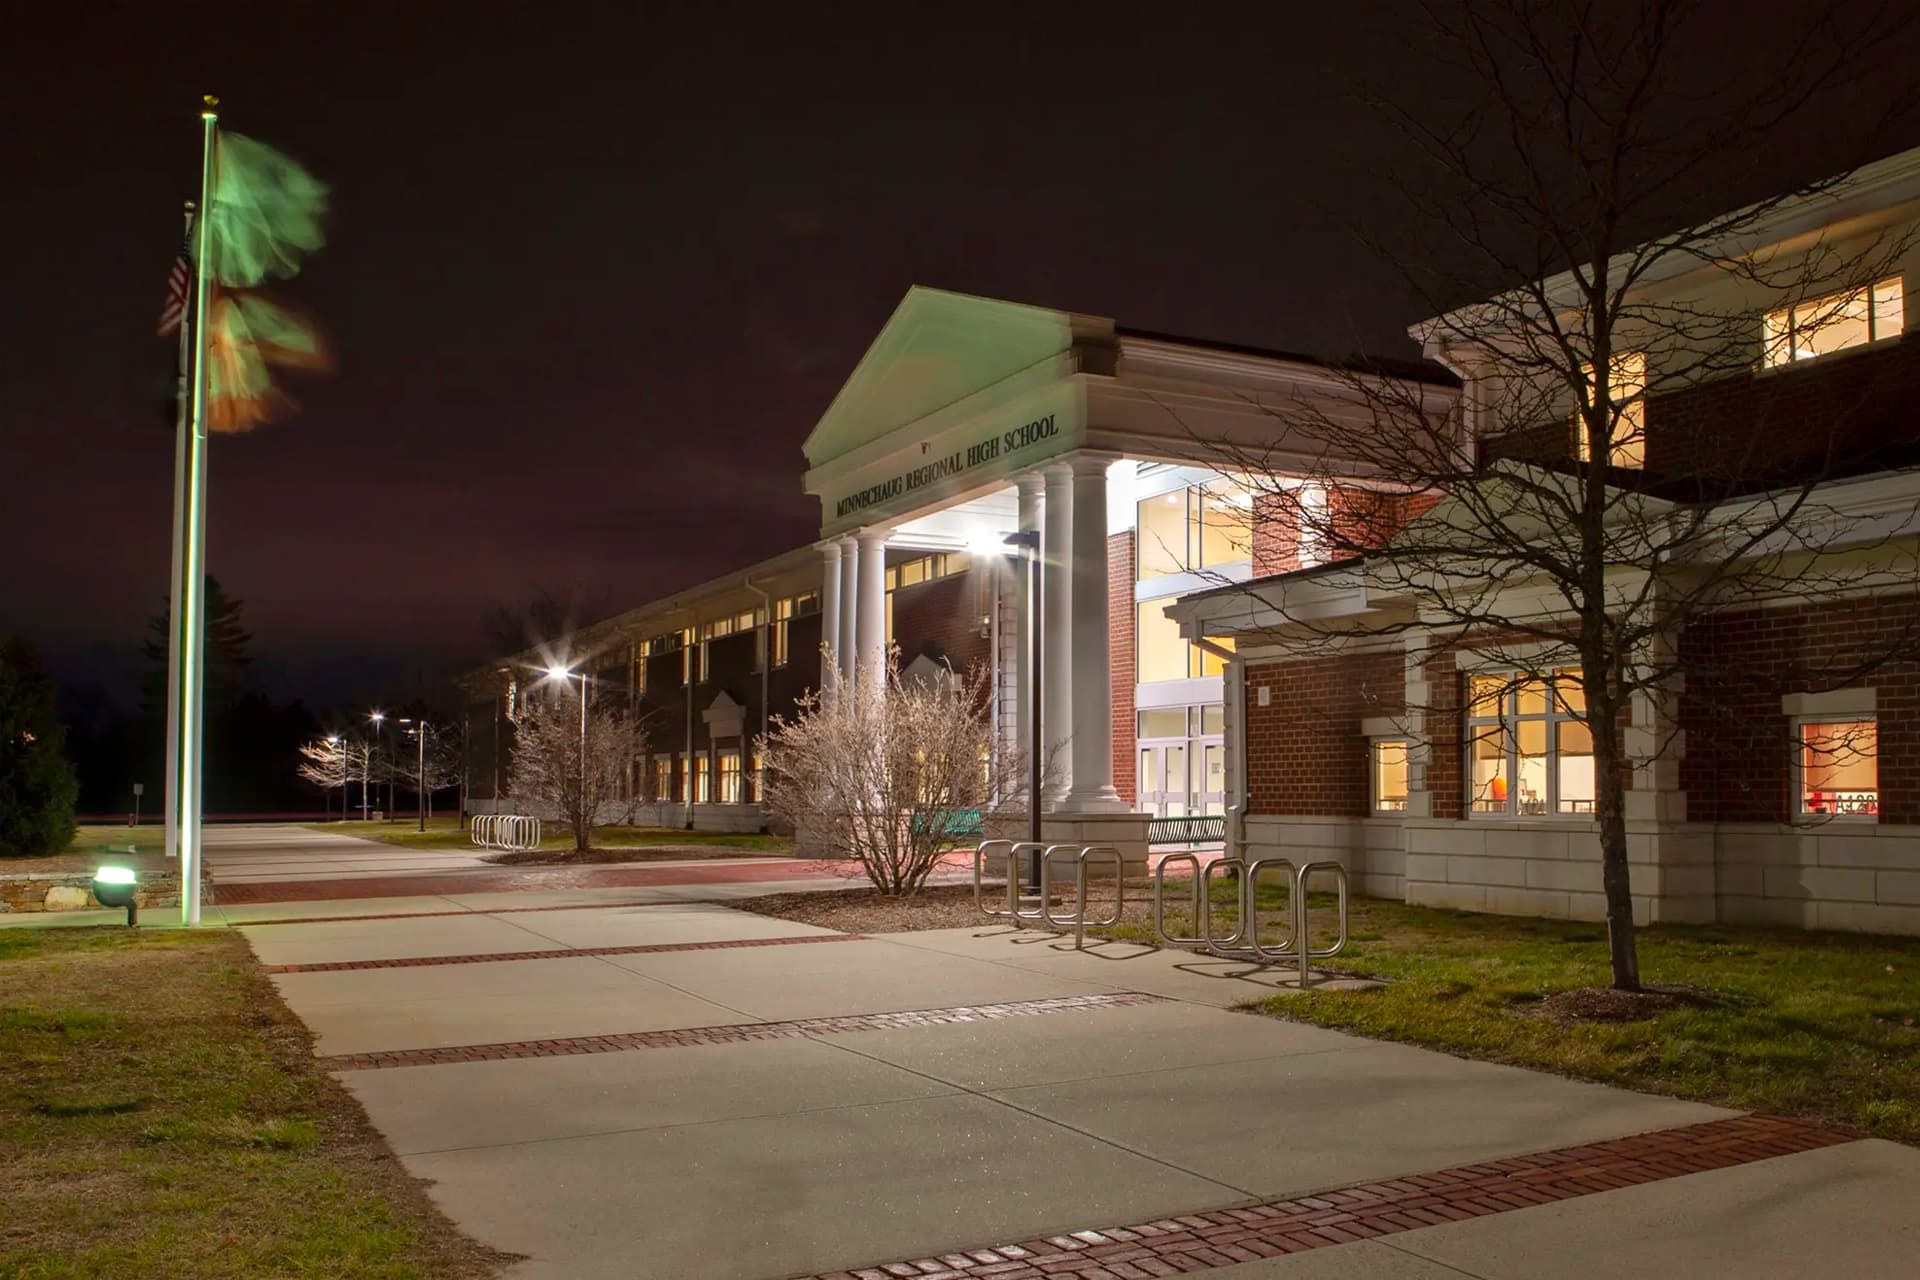 لامپ روشن در دبیرستان مینه شاگ آمریکا